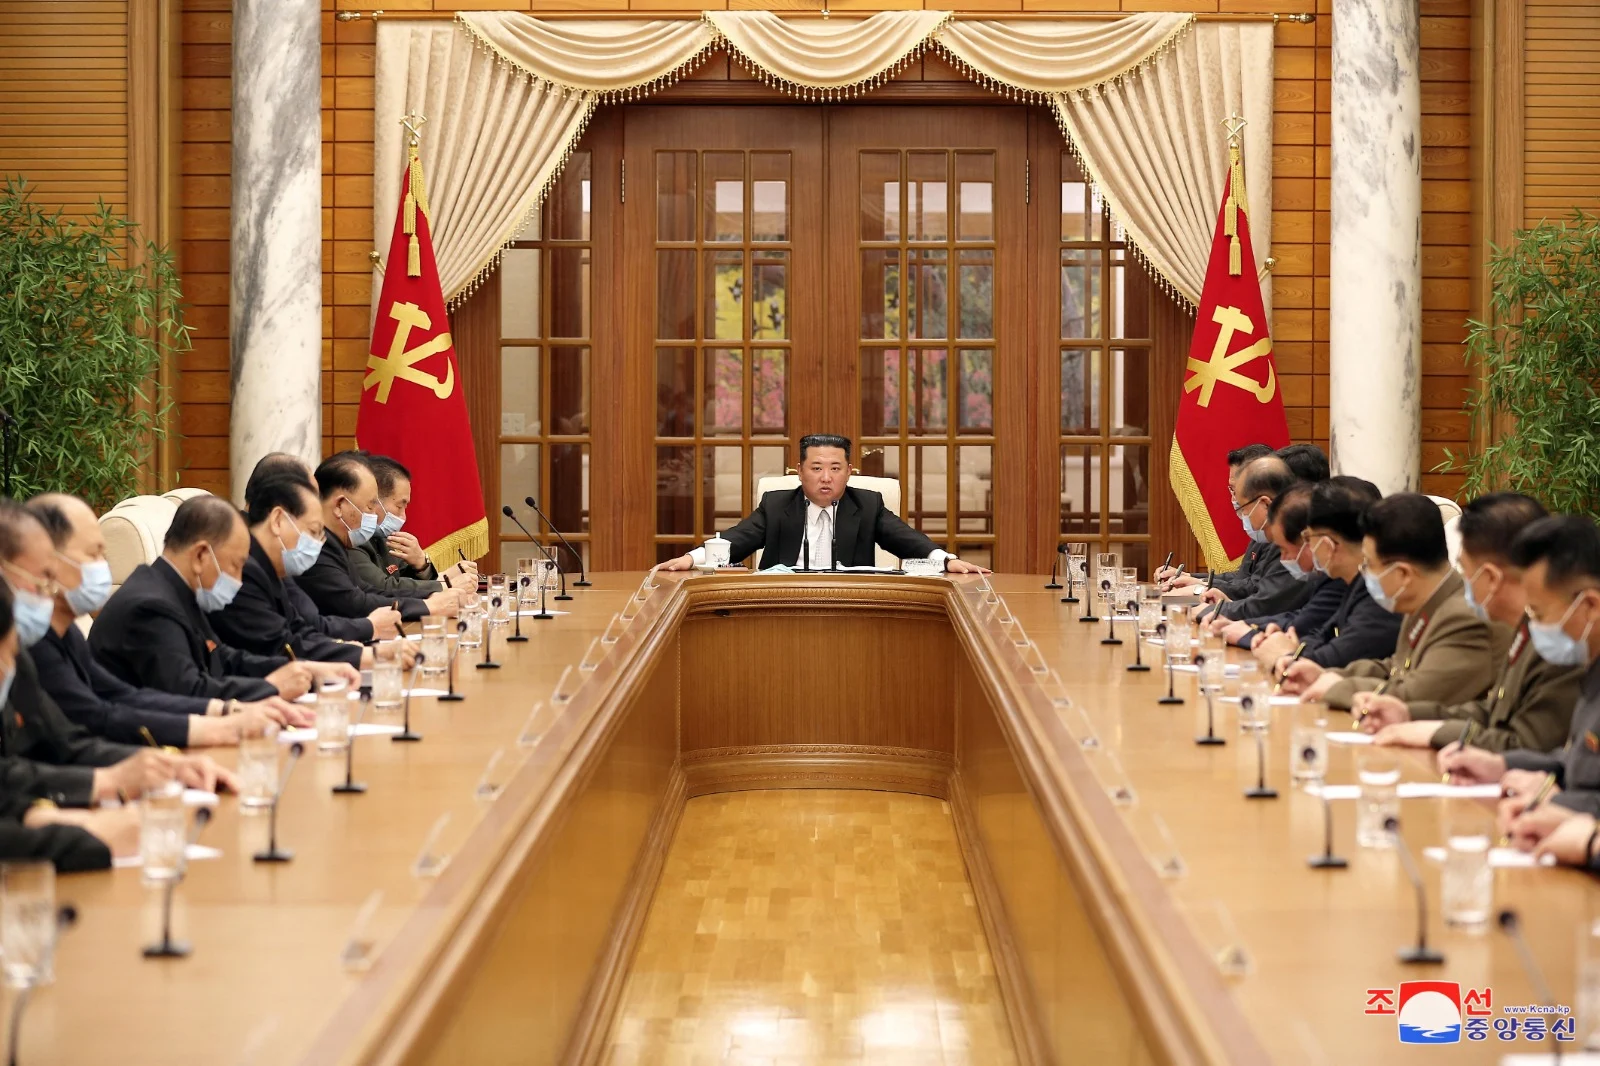 מנהיג צפון קוריאה קים ג'ונג-און בישיבת המפלגה על ההתמודדות עם מגפת הקורונה